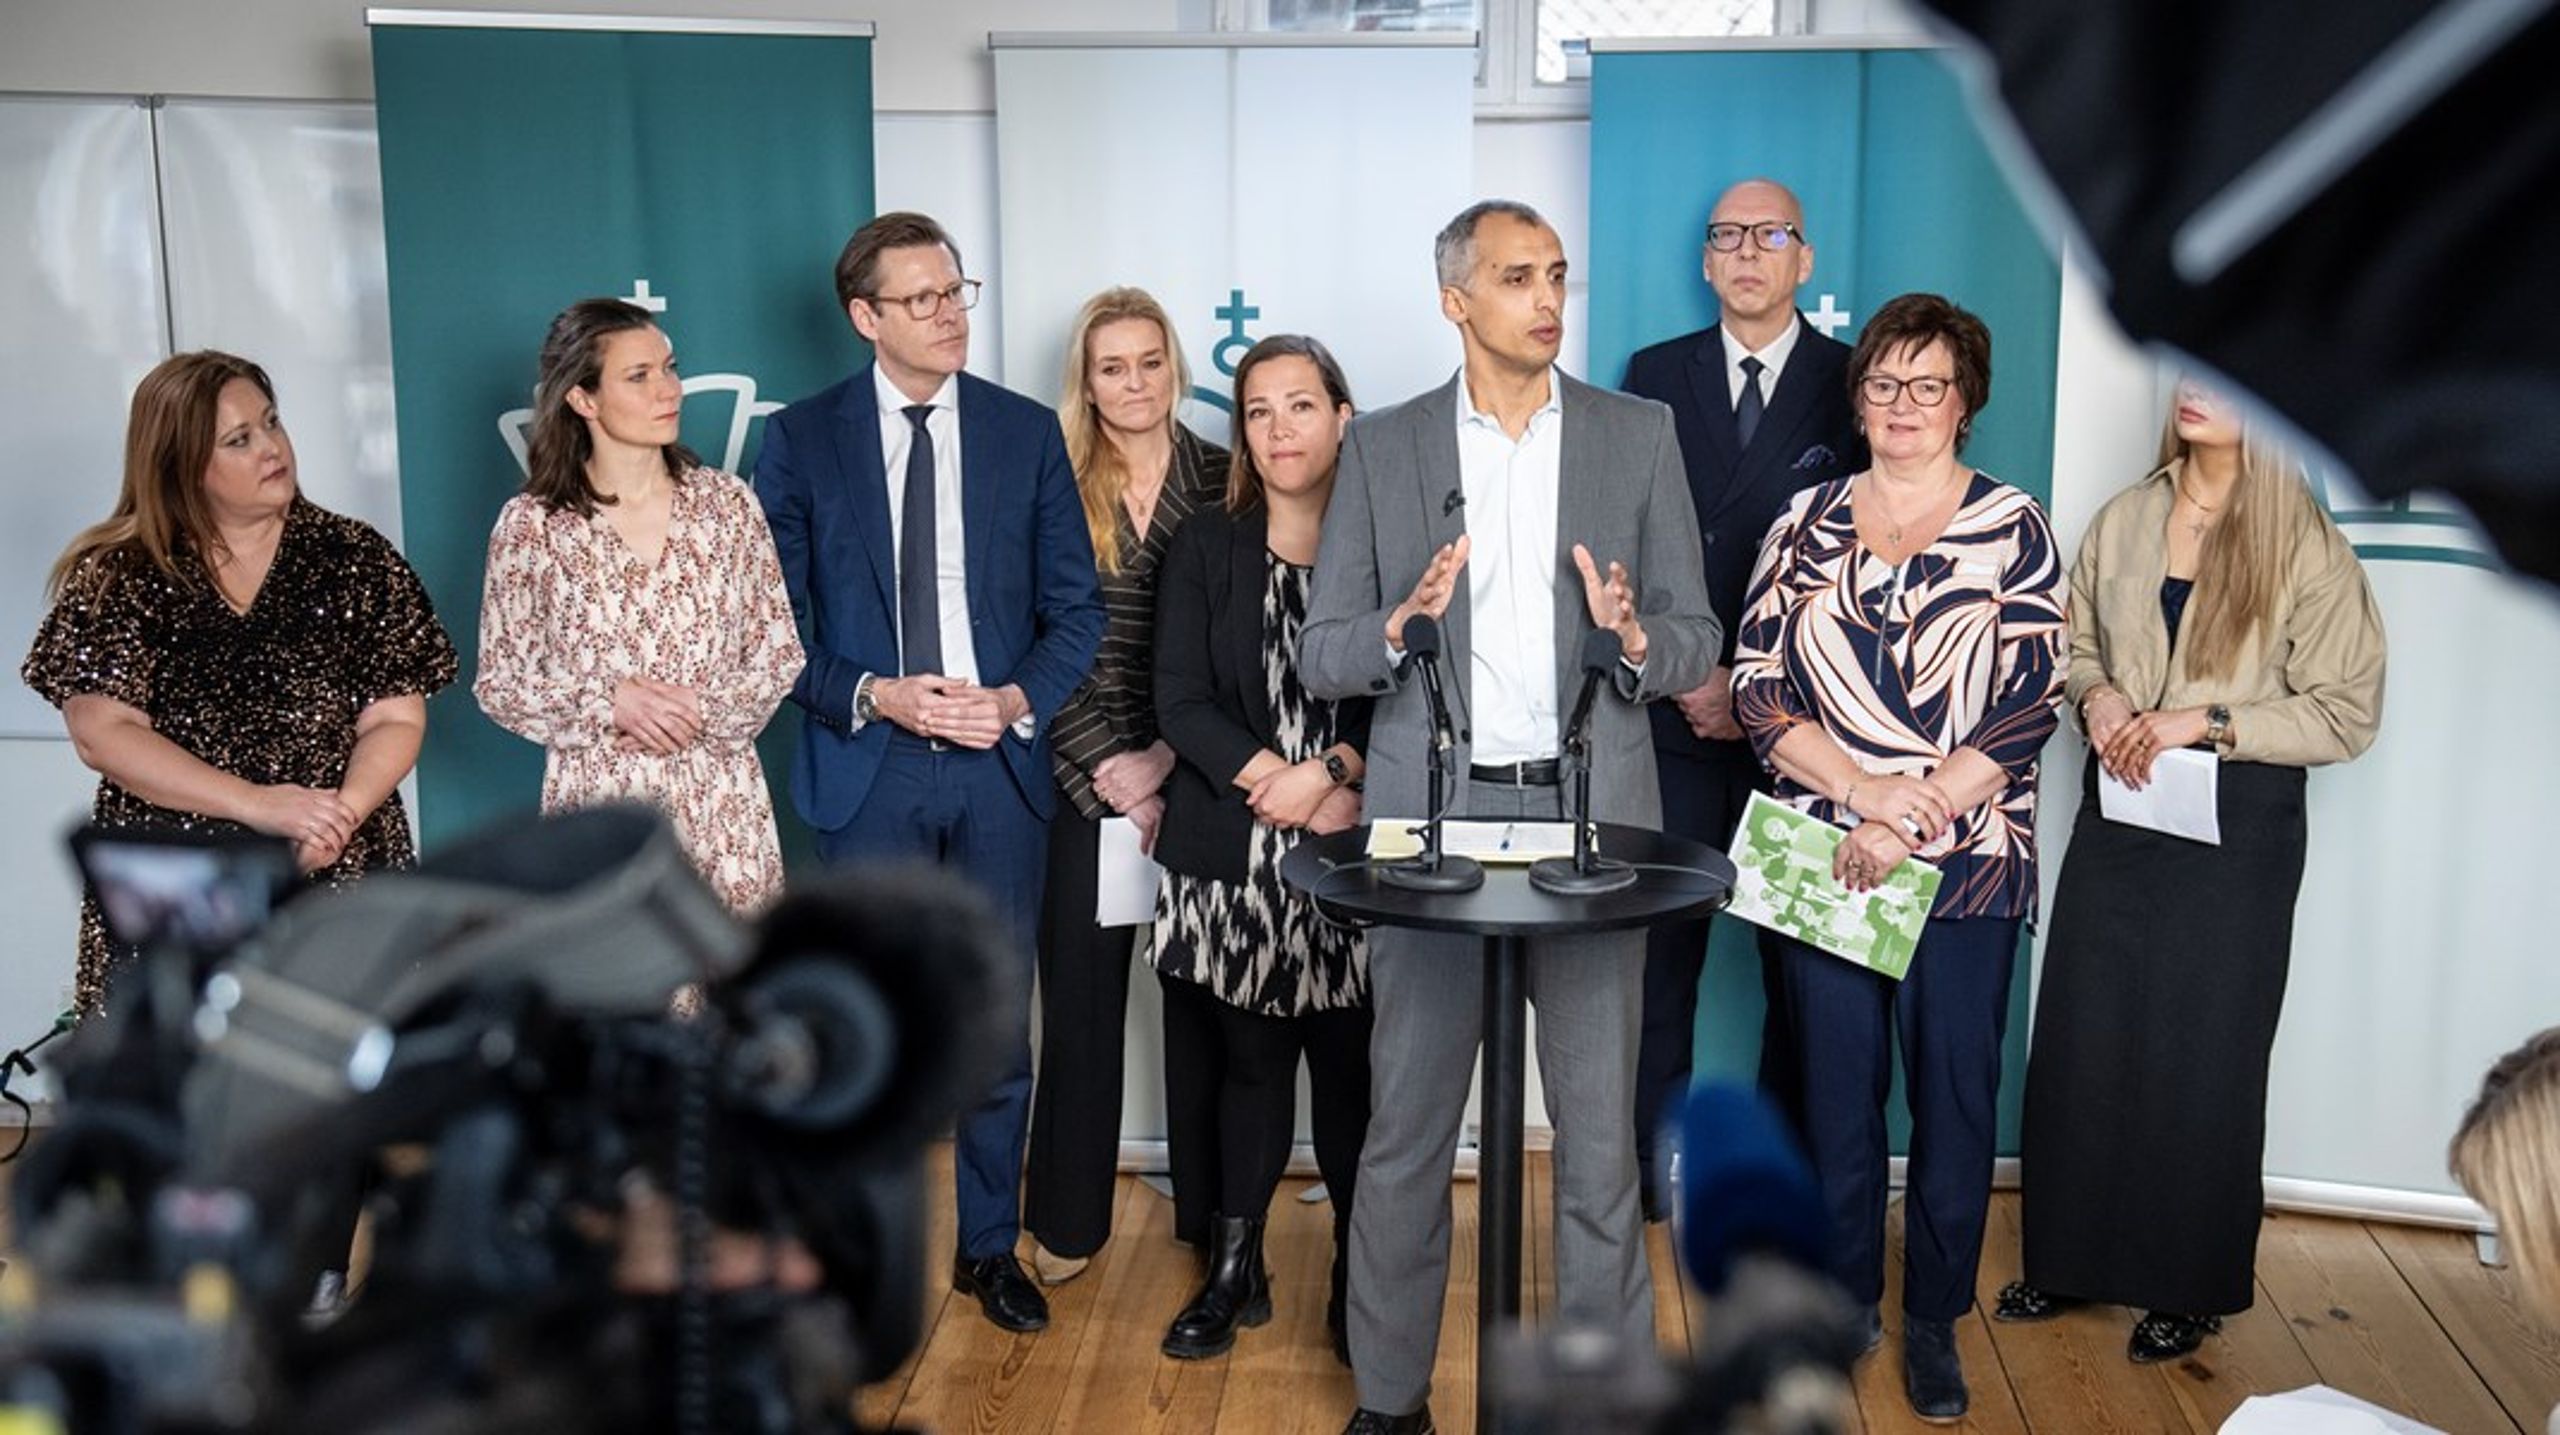 Børne- og undervisningsminister Mattias Tesfaye præsenterede sammen med en række ordførere en ny aftale om folkeskolen tirsdag formiddag.